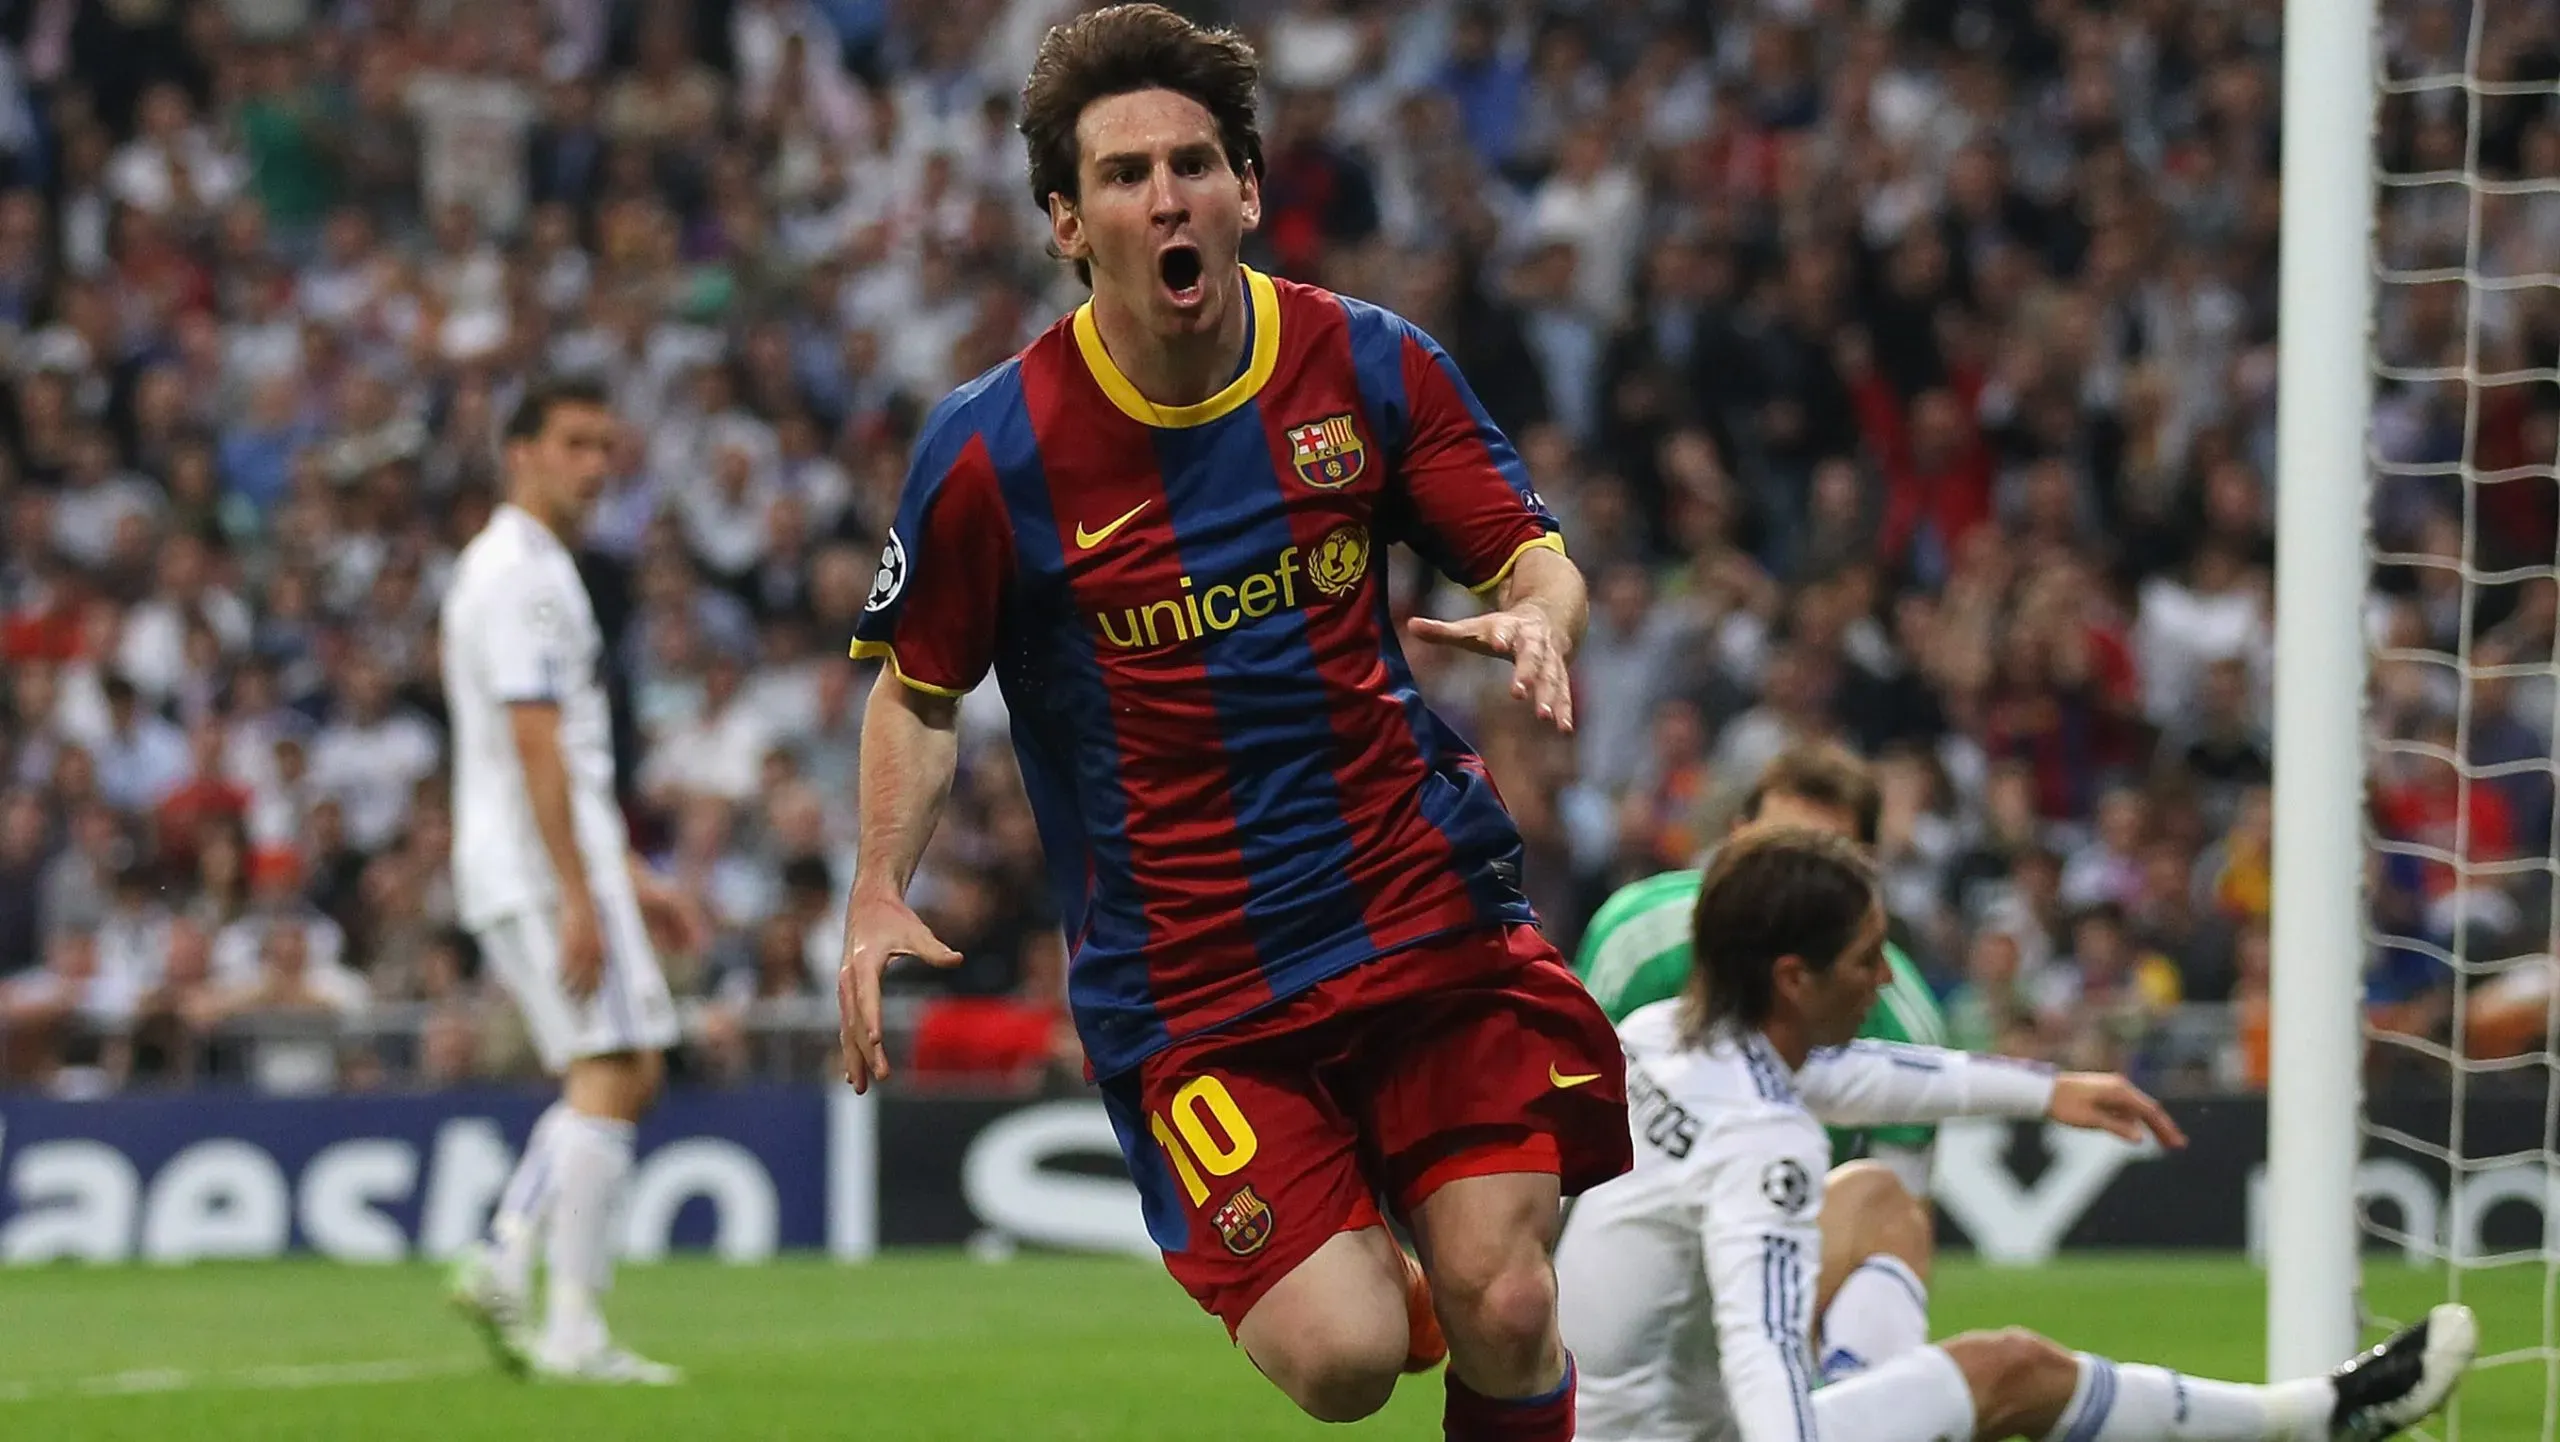 La celebración de Lionel Messi en el 1 a 0 del Barcelona vs. Real Madrid por la Champions League 2010/2011 en el Bernabéu. Getty Images.